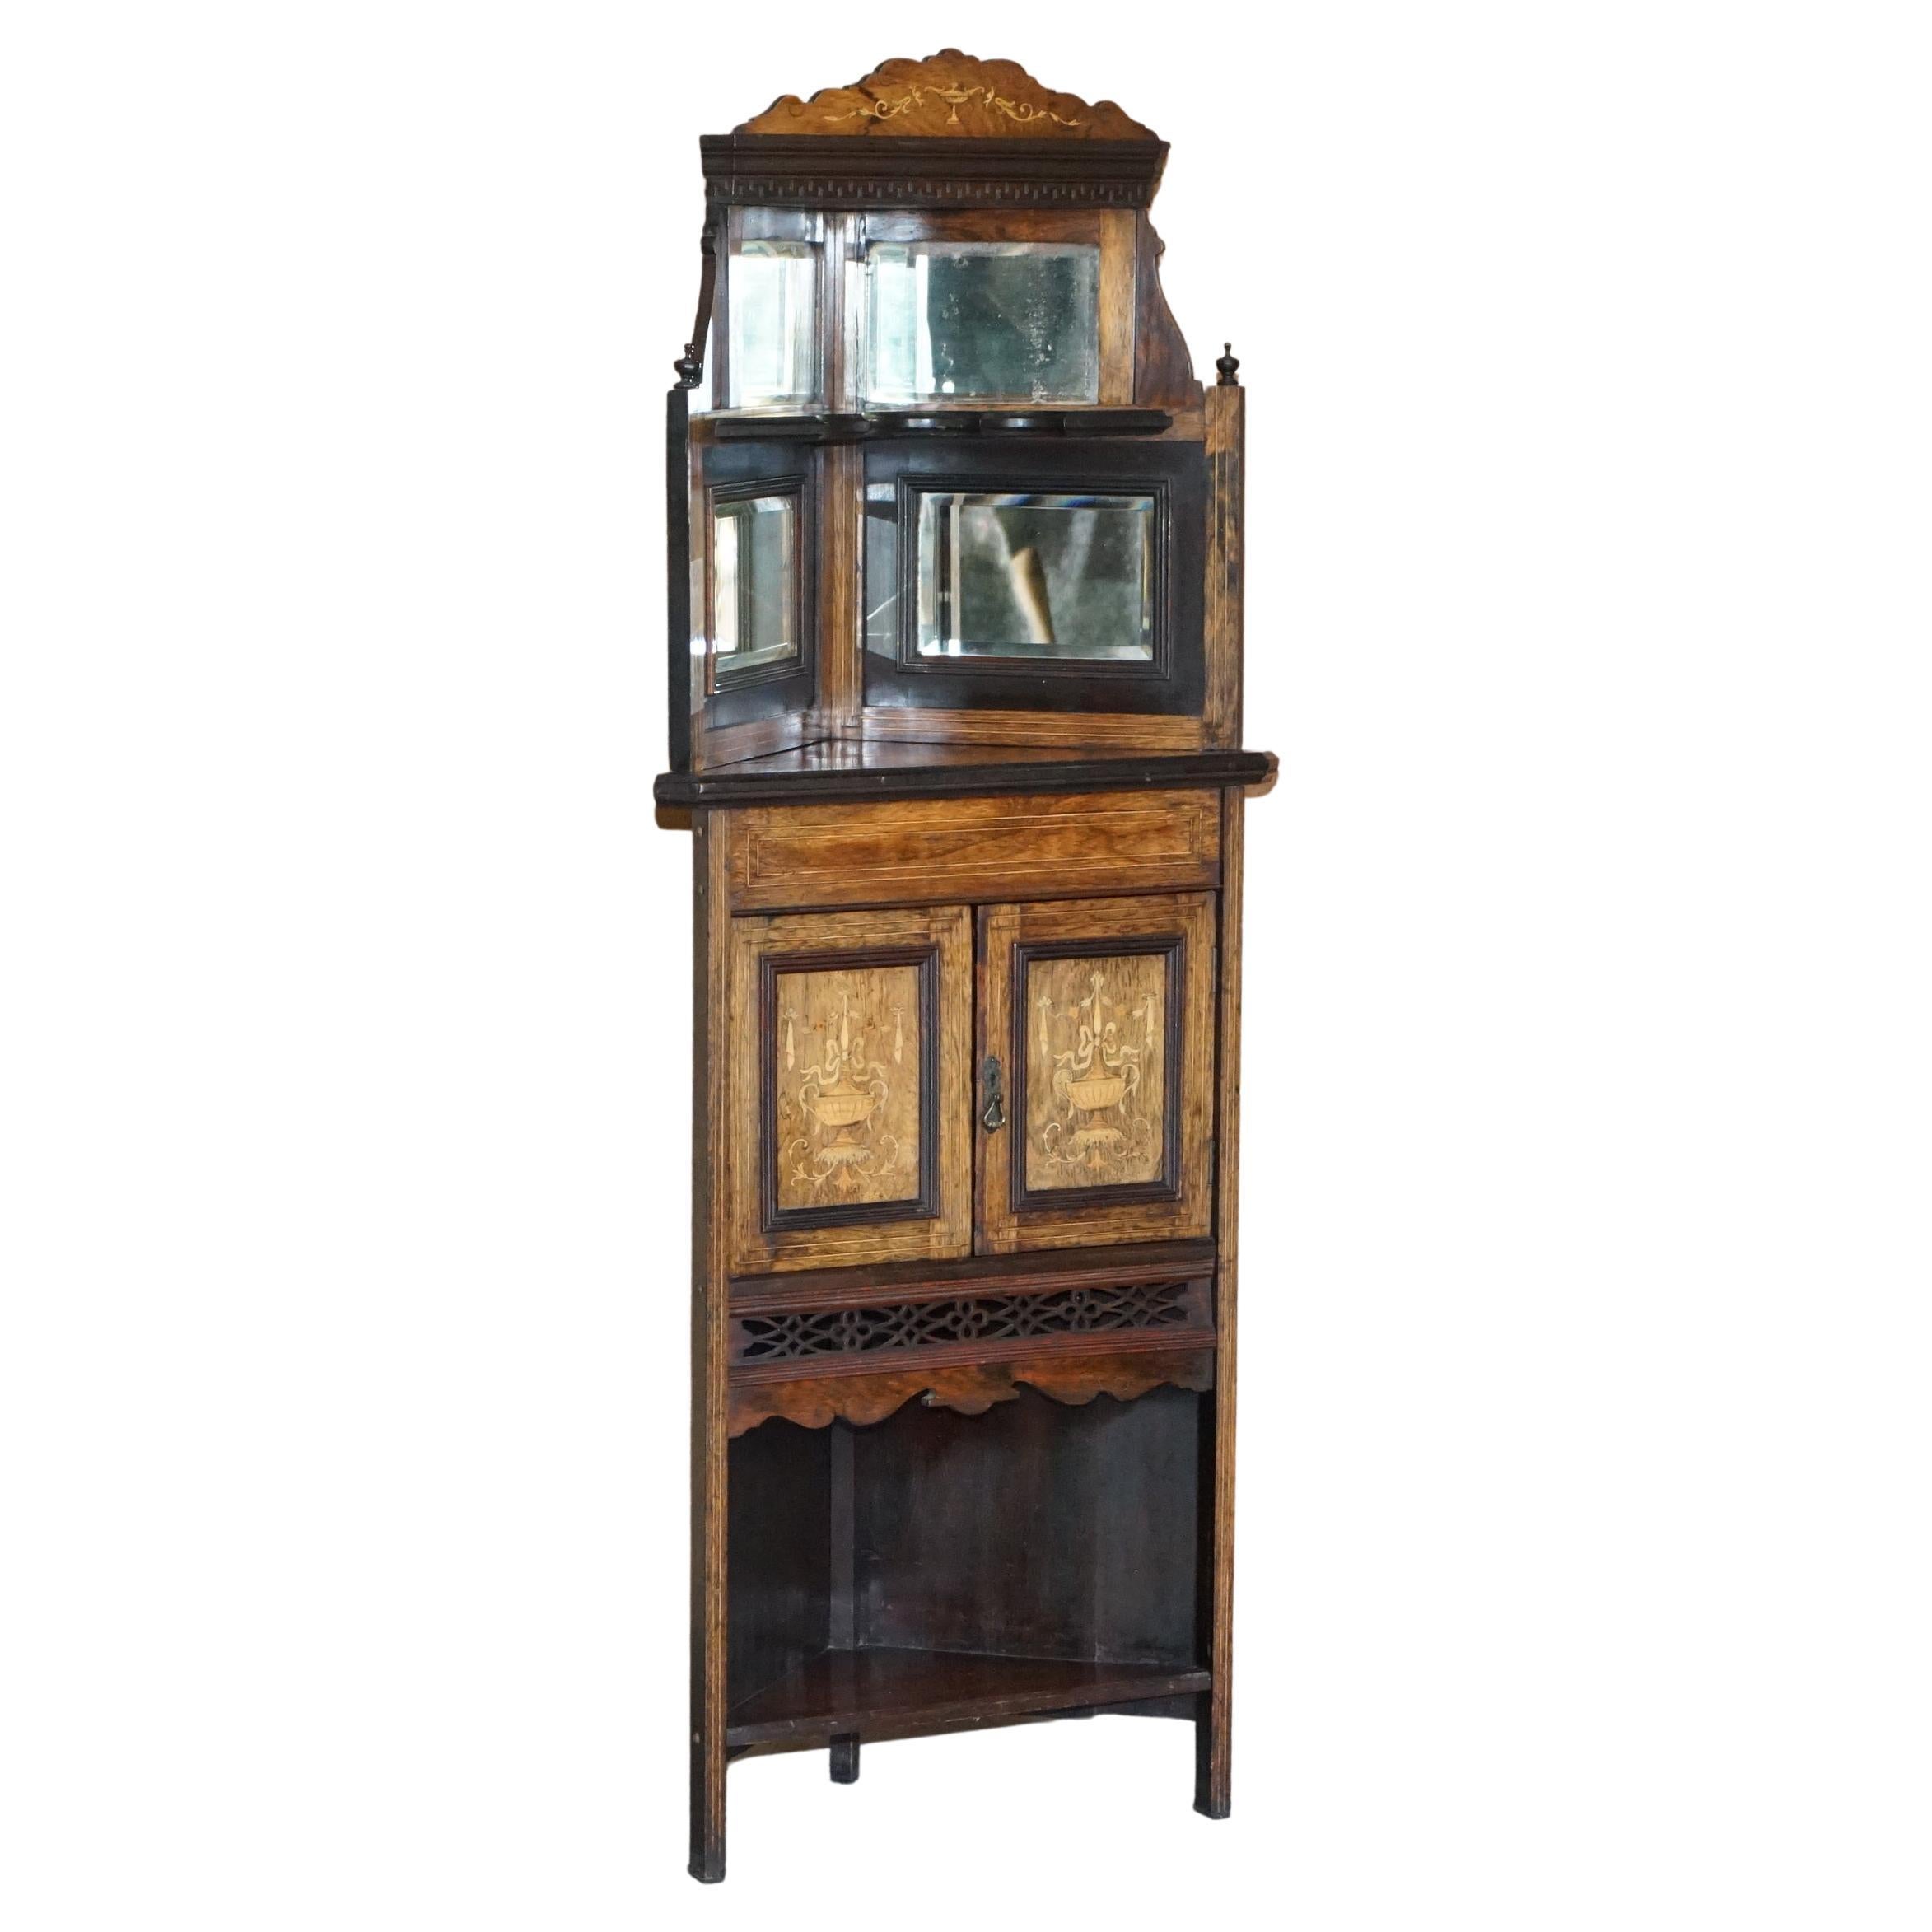 Ancienne armoire d'angle italienne datant d'environ 1880 en bois dur, marqueterie de buis et miroir à l'arrière